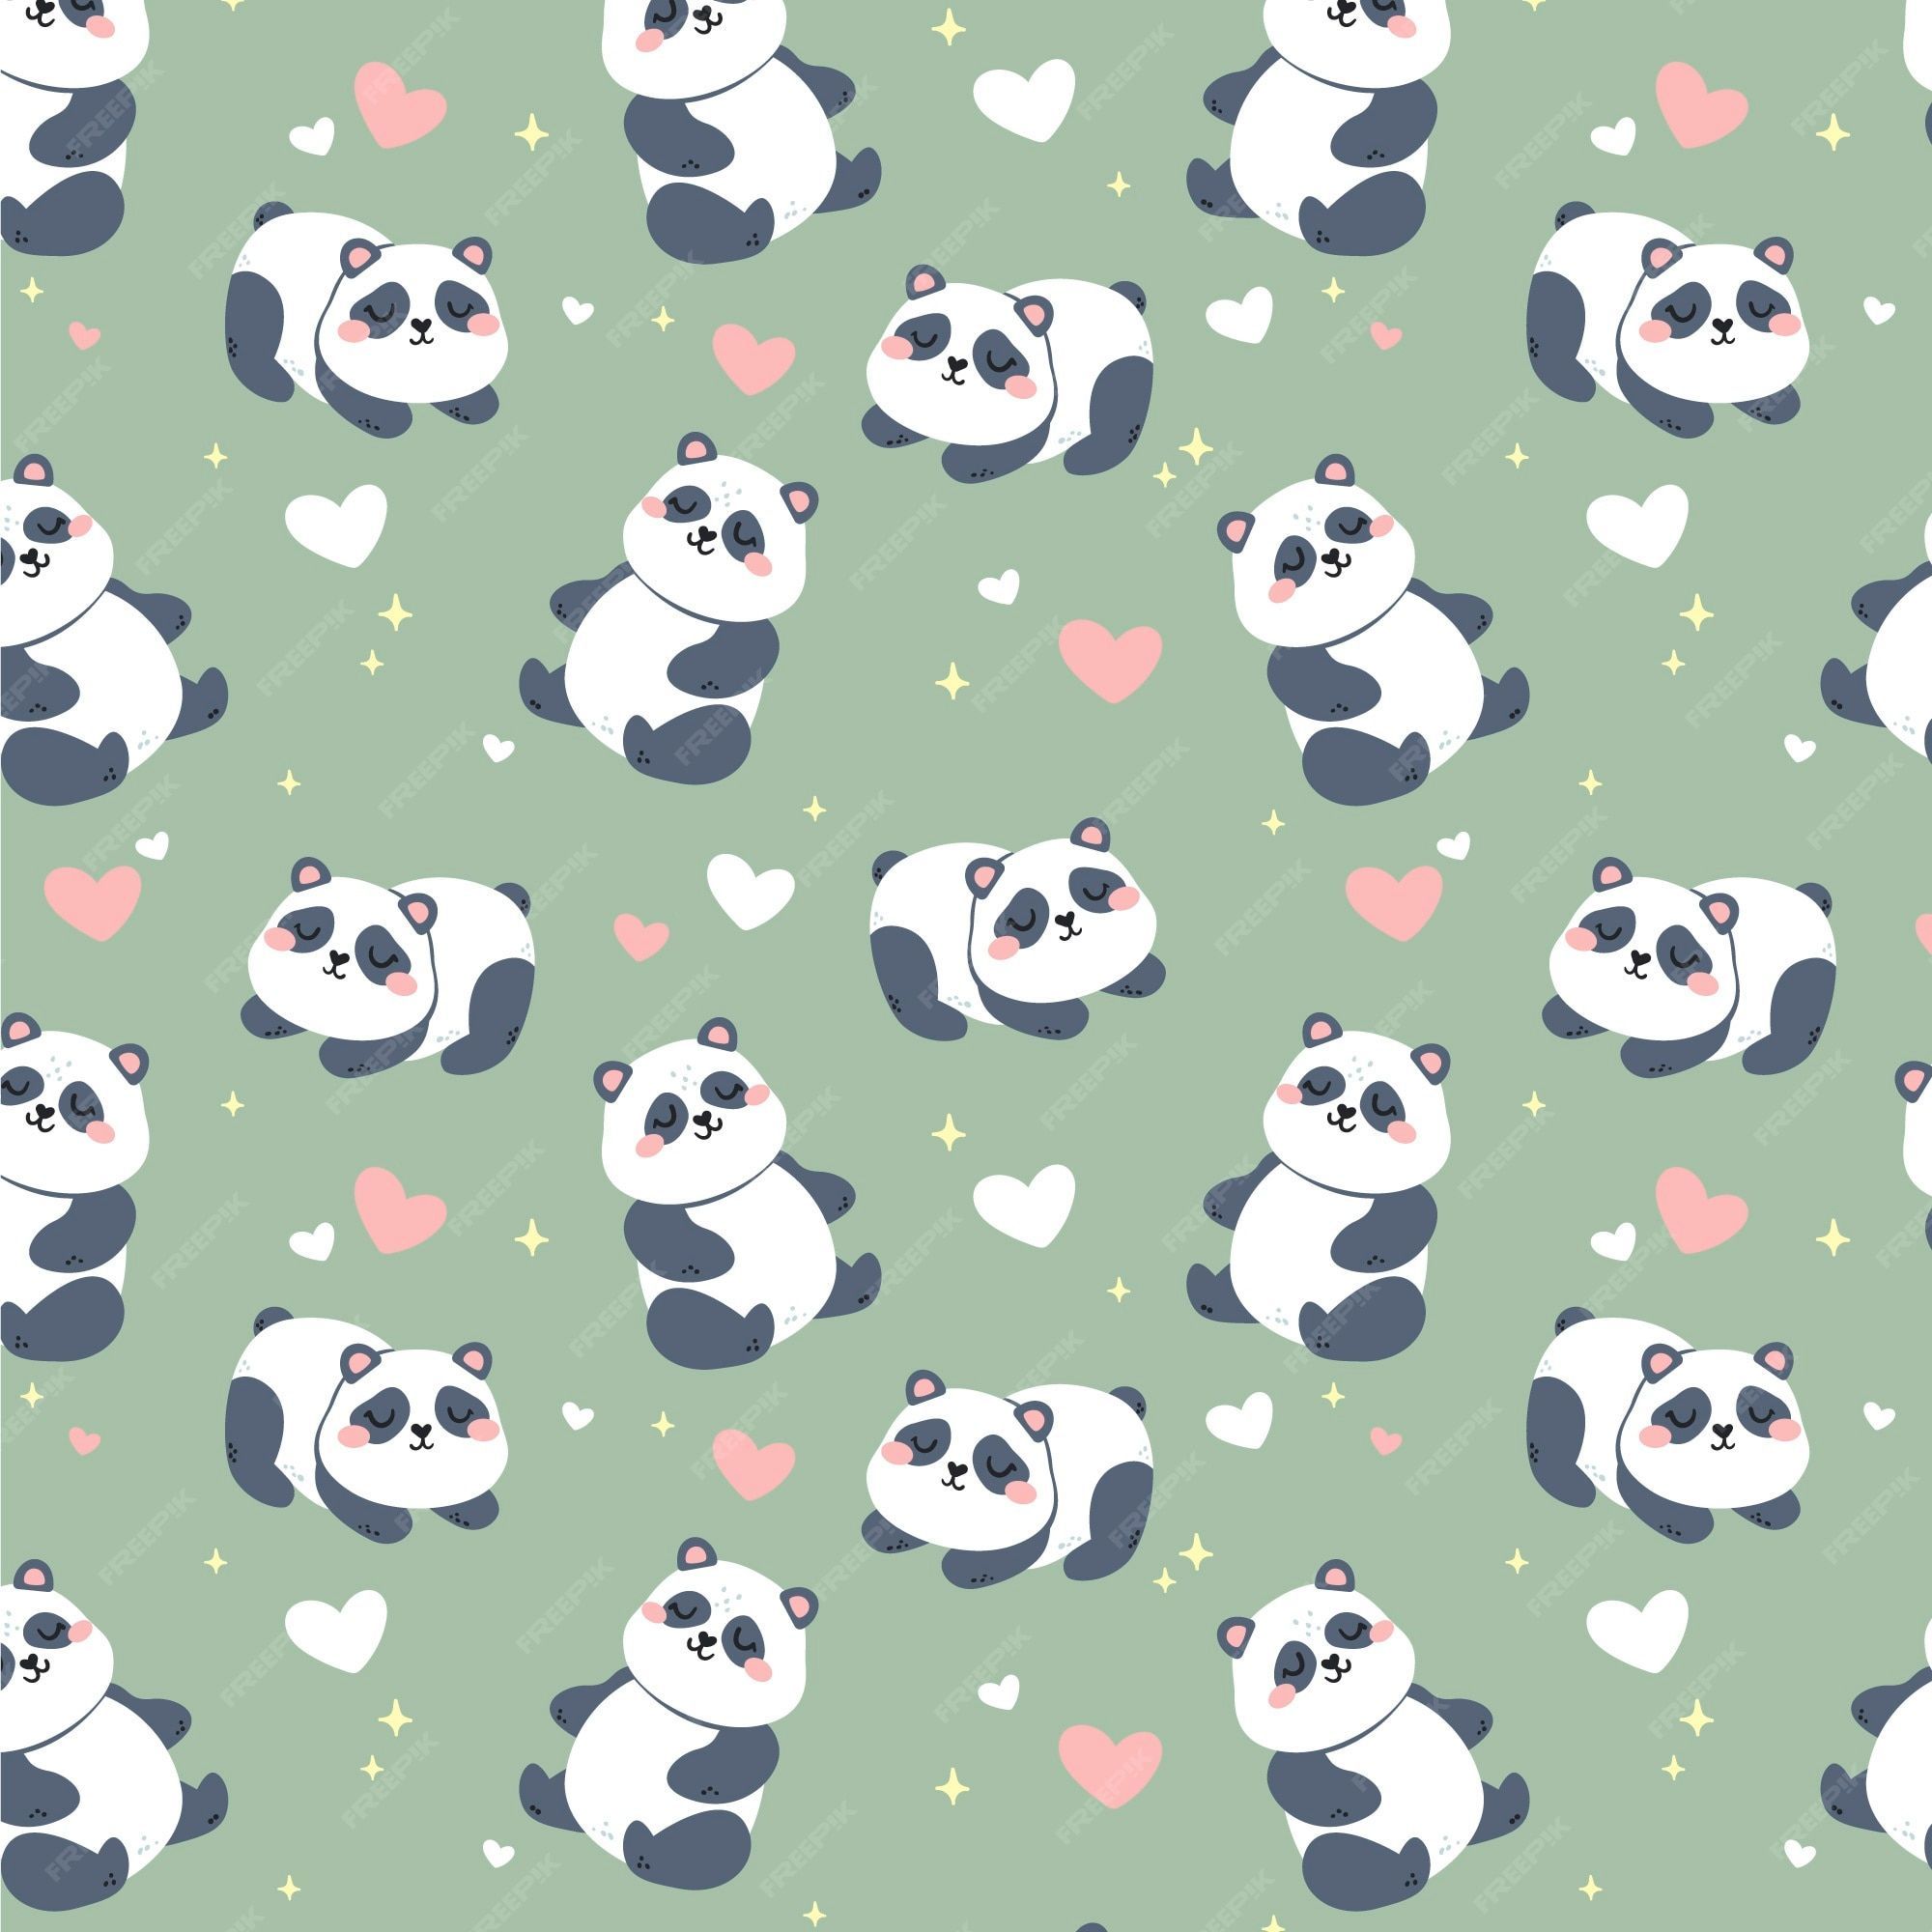 Cute panda wallpaper Vectors & Illustrations for Free Download - Panda